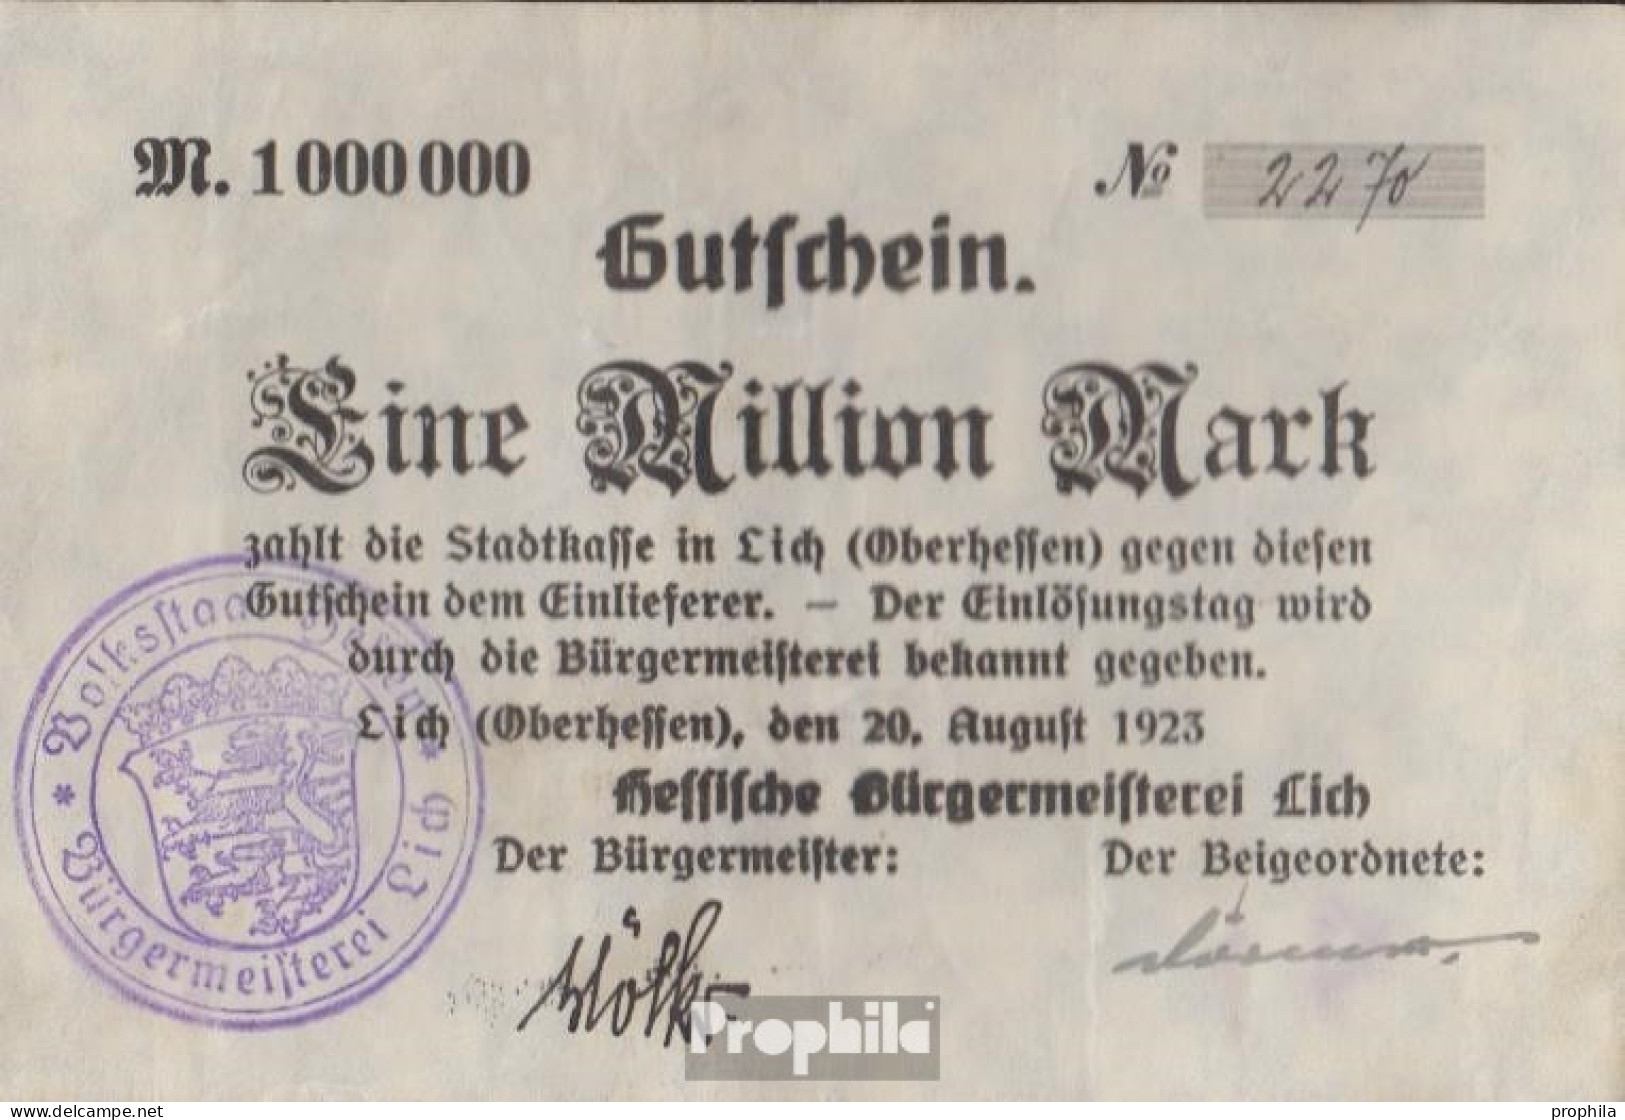 Lich Inflationsgeld Stadt Lich Gebraucht (III) 1923 1 Million Mark - 1 Mio. Mark